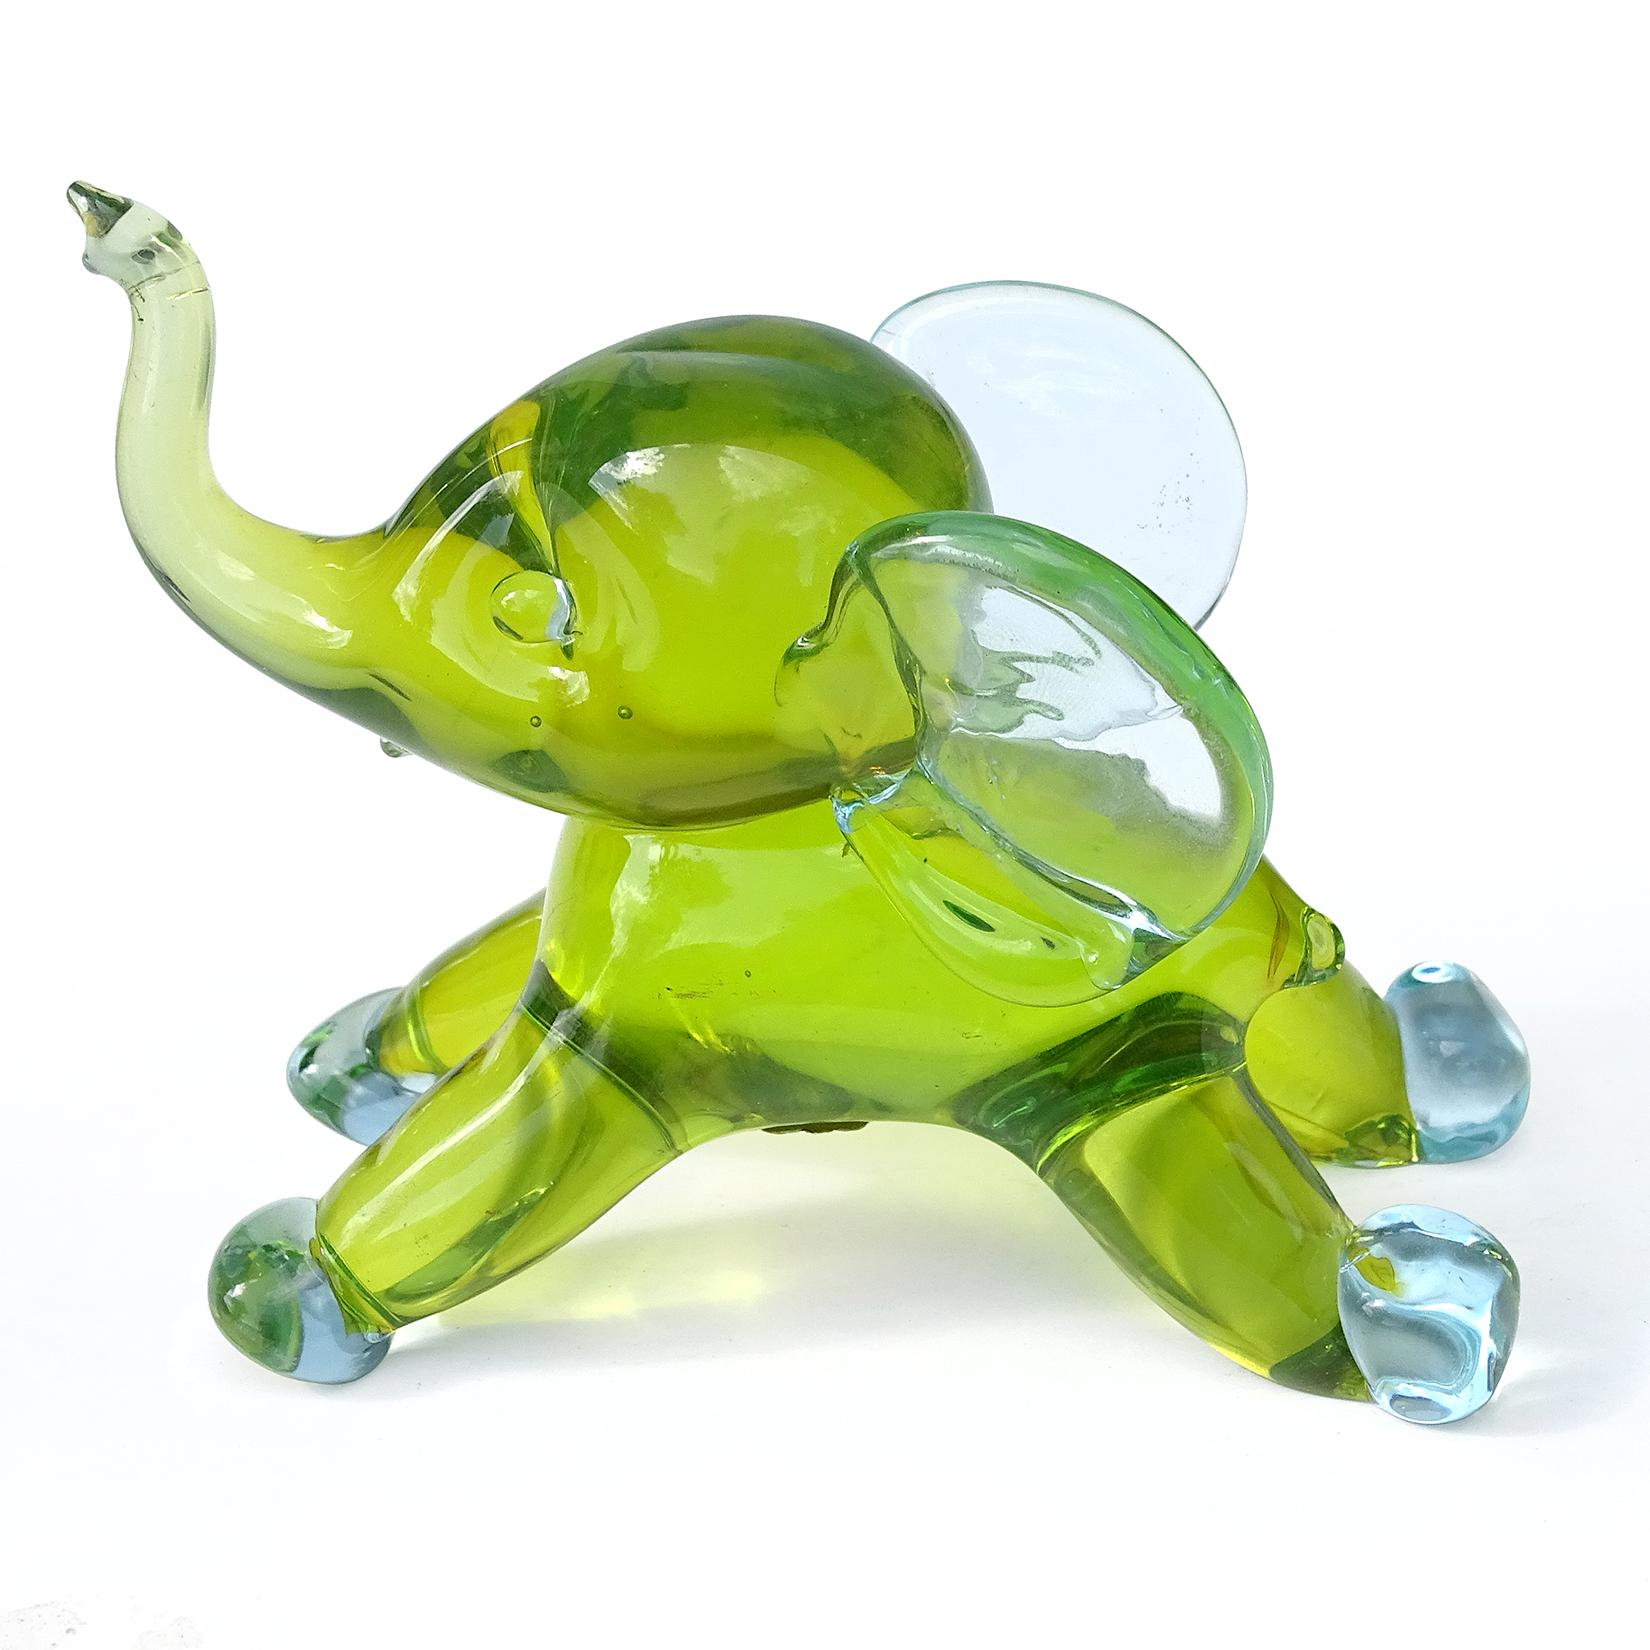 uranium glass elephant